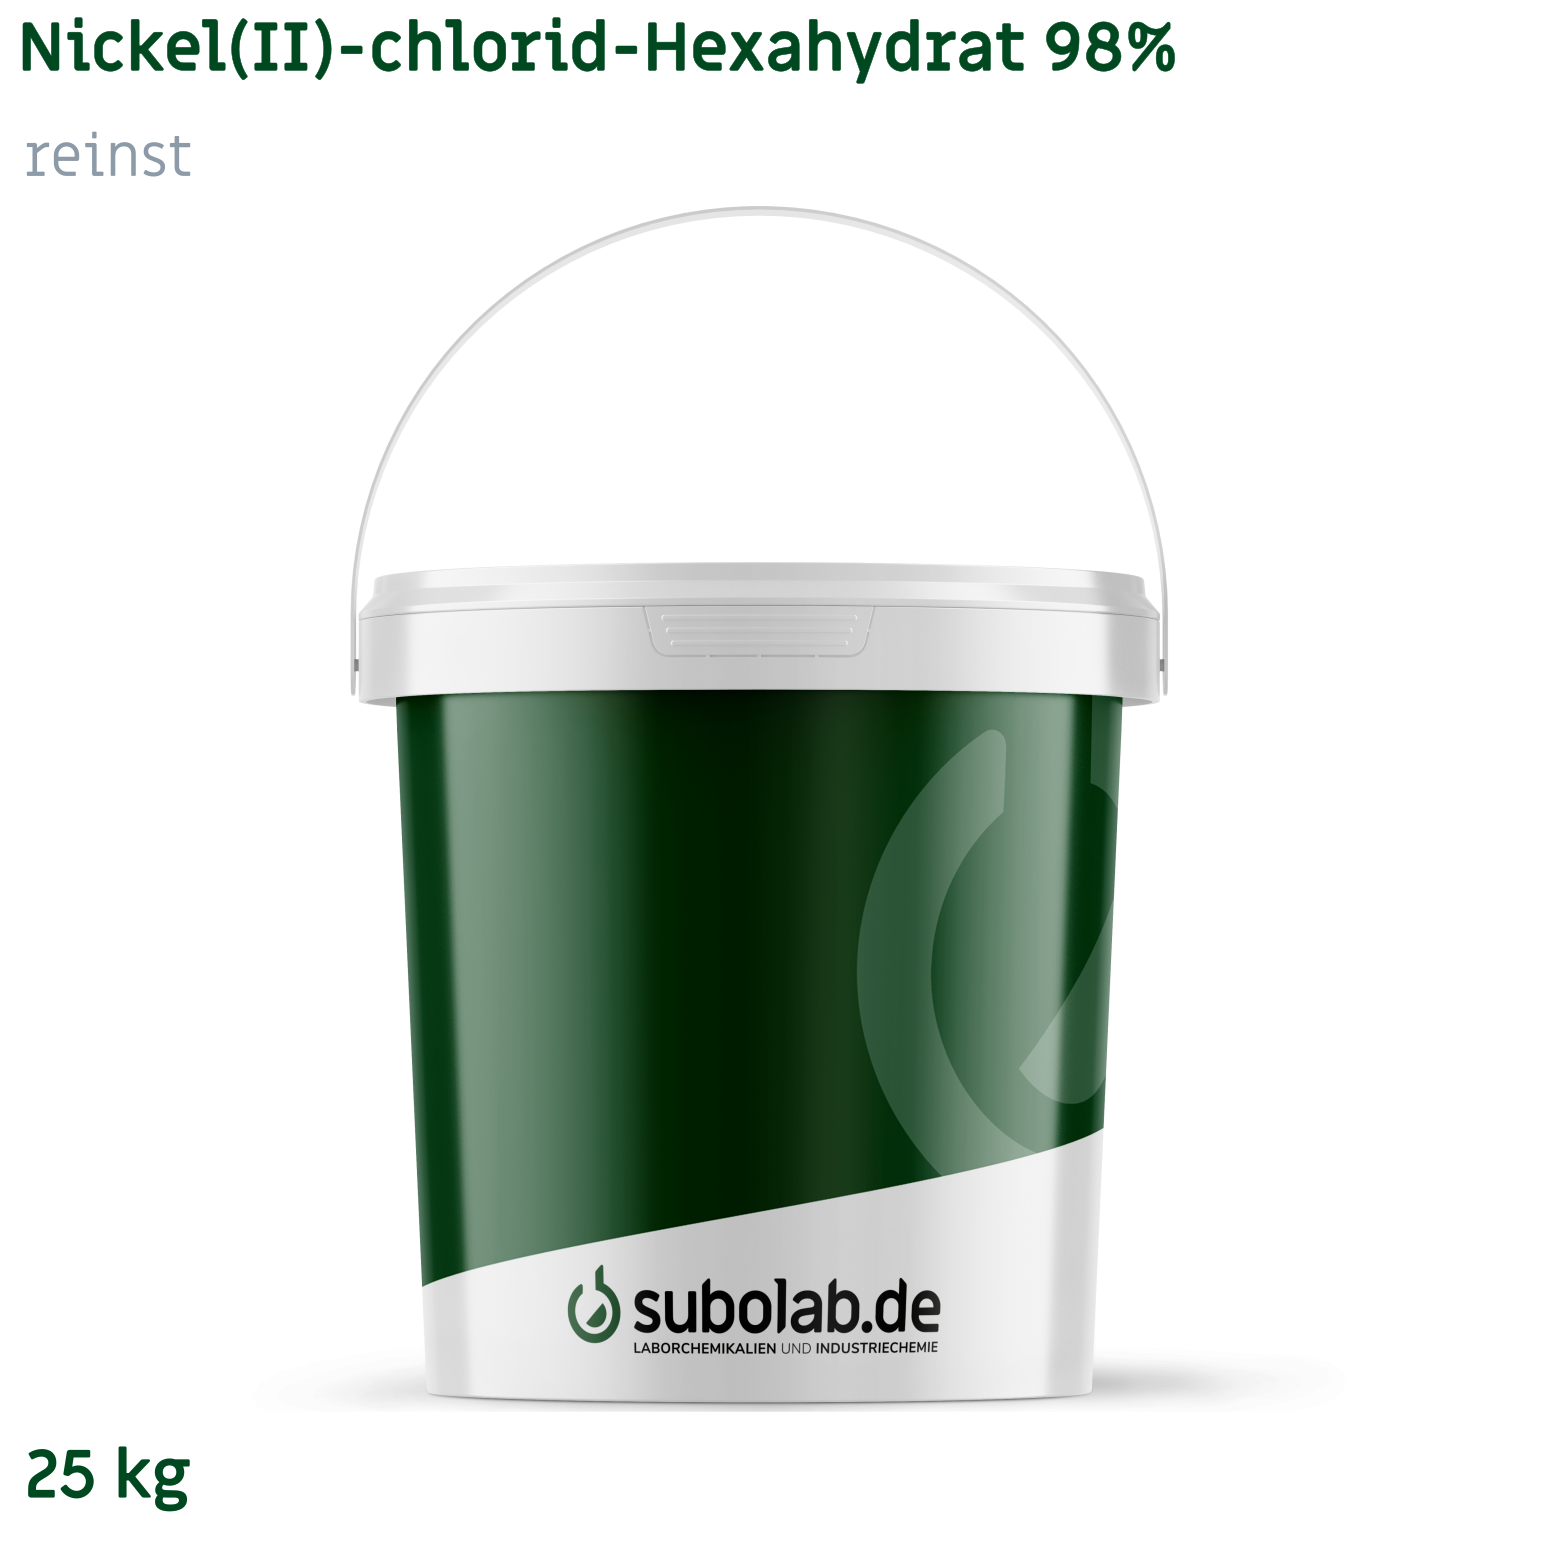 Bild von Nickel(II)-chlorid - Hexahydrat 98% reinst (25 kg)